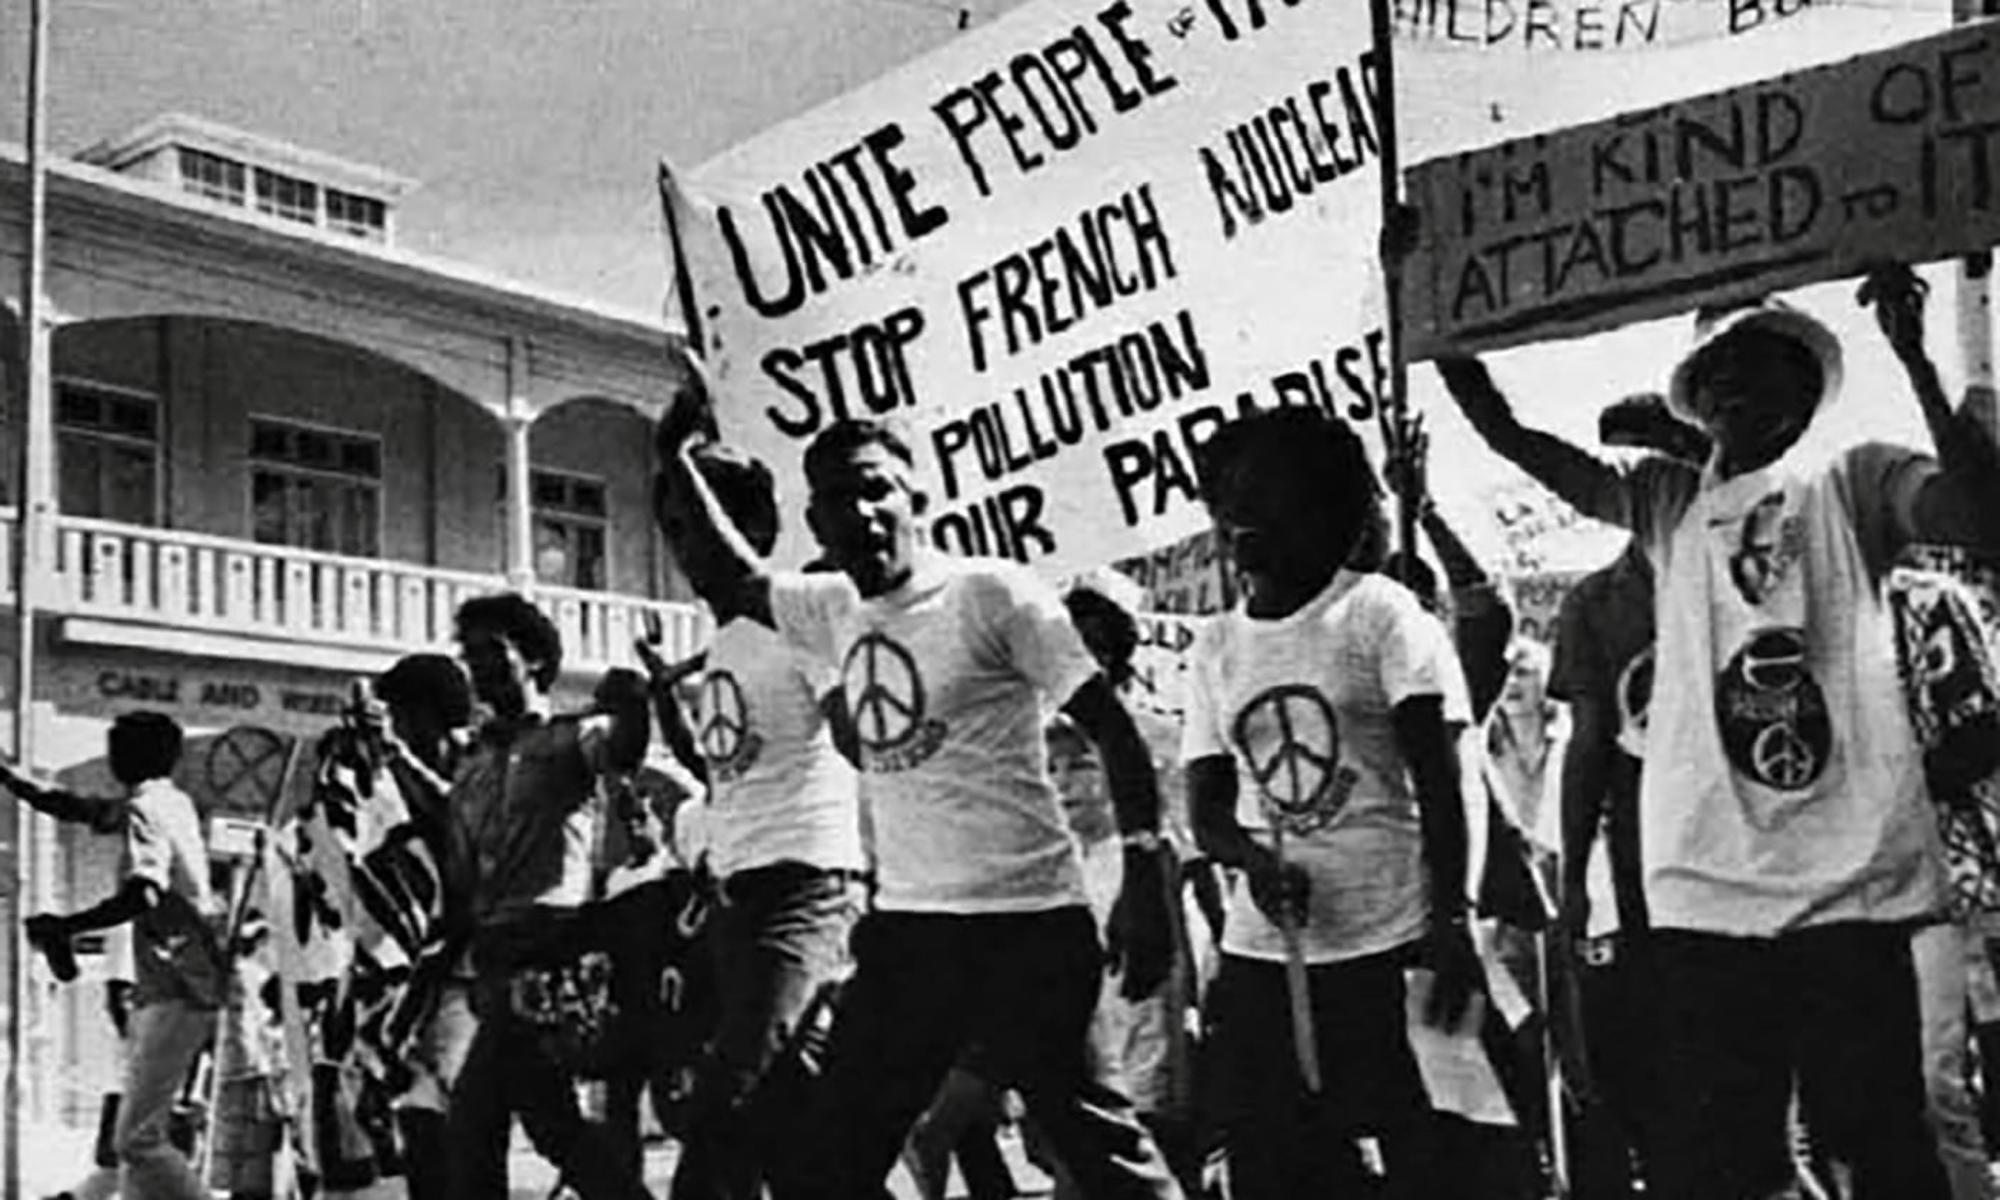 El comité contra las pruebas en Mururoa (ATOM) protesta en las calles de Suva (Fiyi) en la década de 1970. Fuente: Beyond Nuclear International